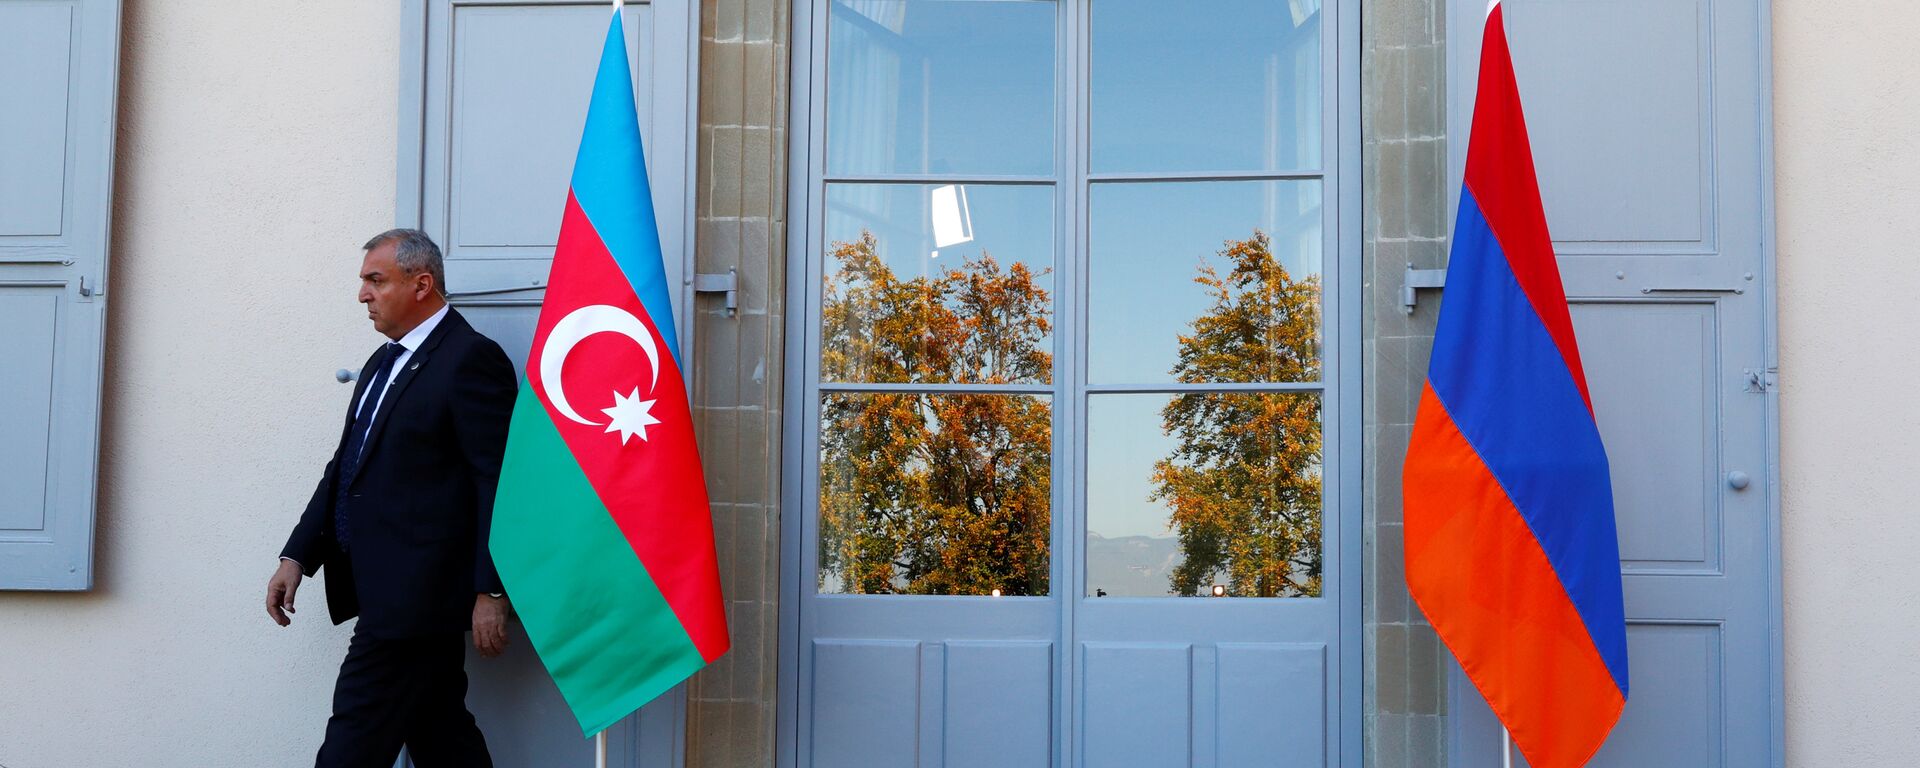 Охранник проходит мимо азербайджанского (слева) и армянского флага на открытии переговоров в Женеве, Швейцария - Sputnik Азербайджан, 1920, 29.03.2021